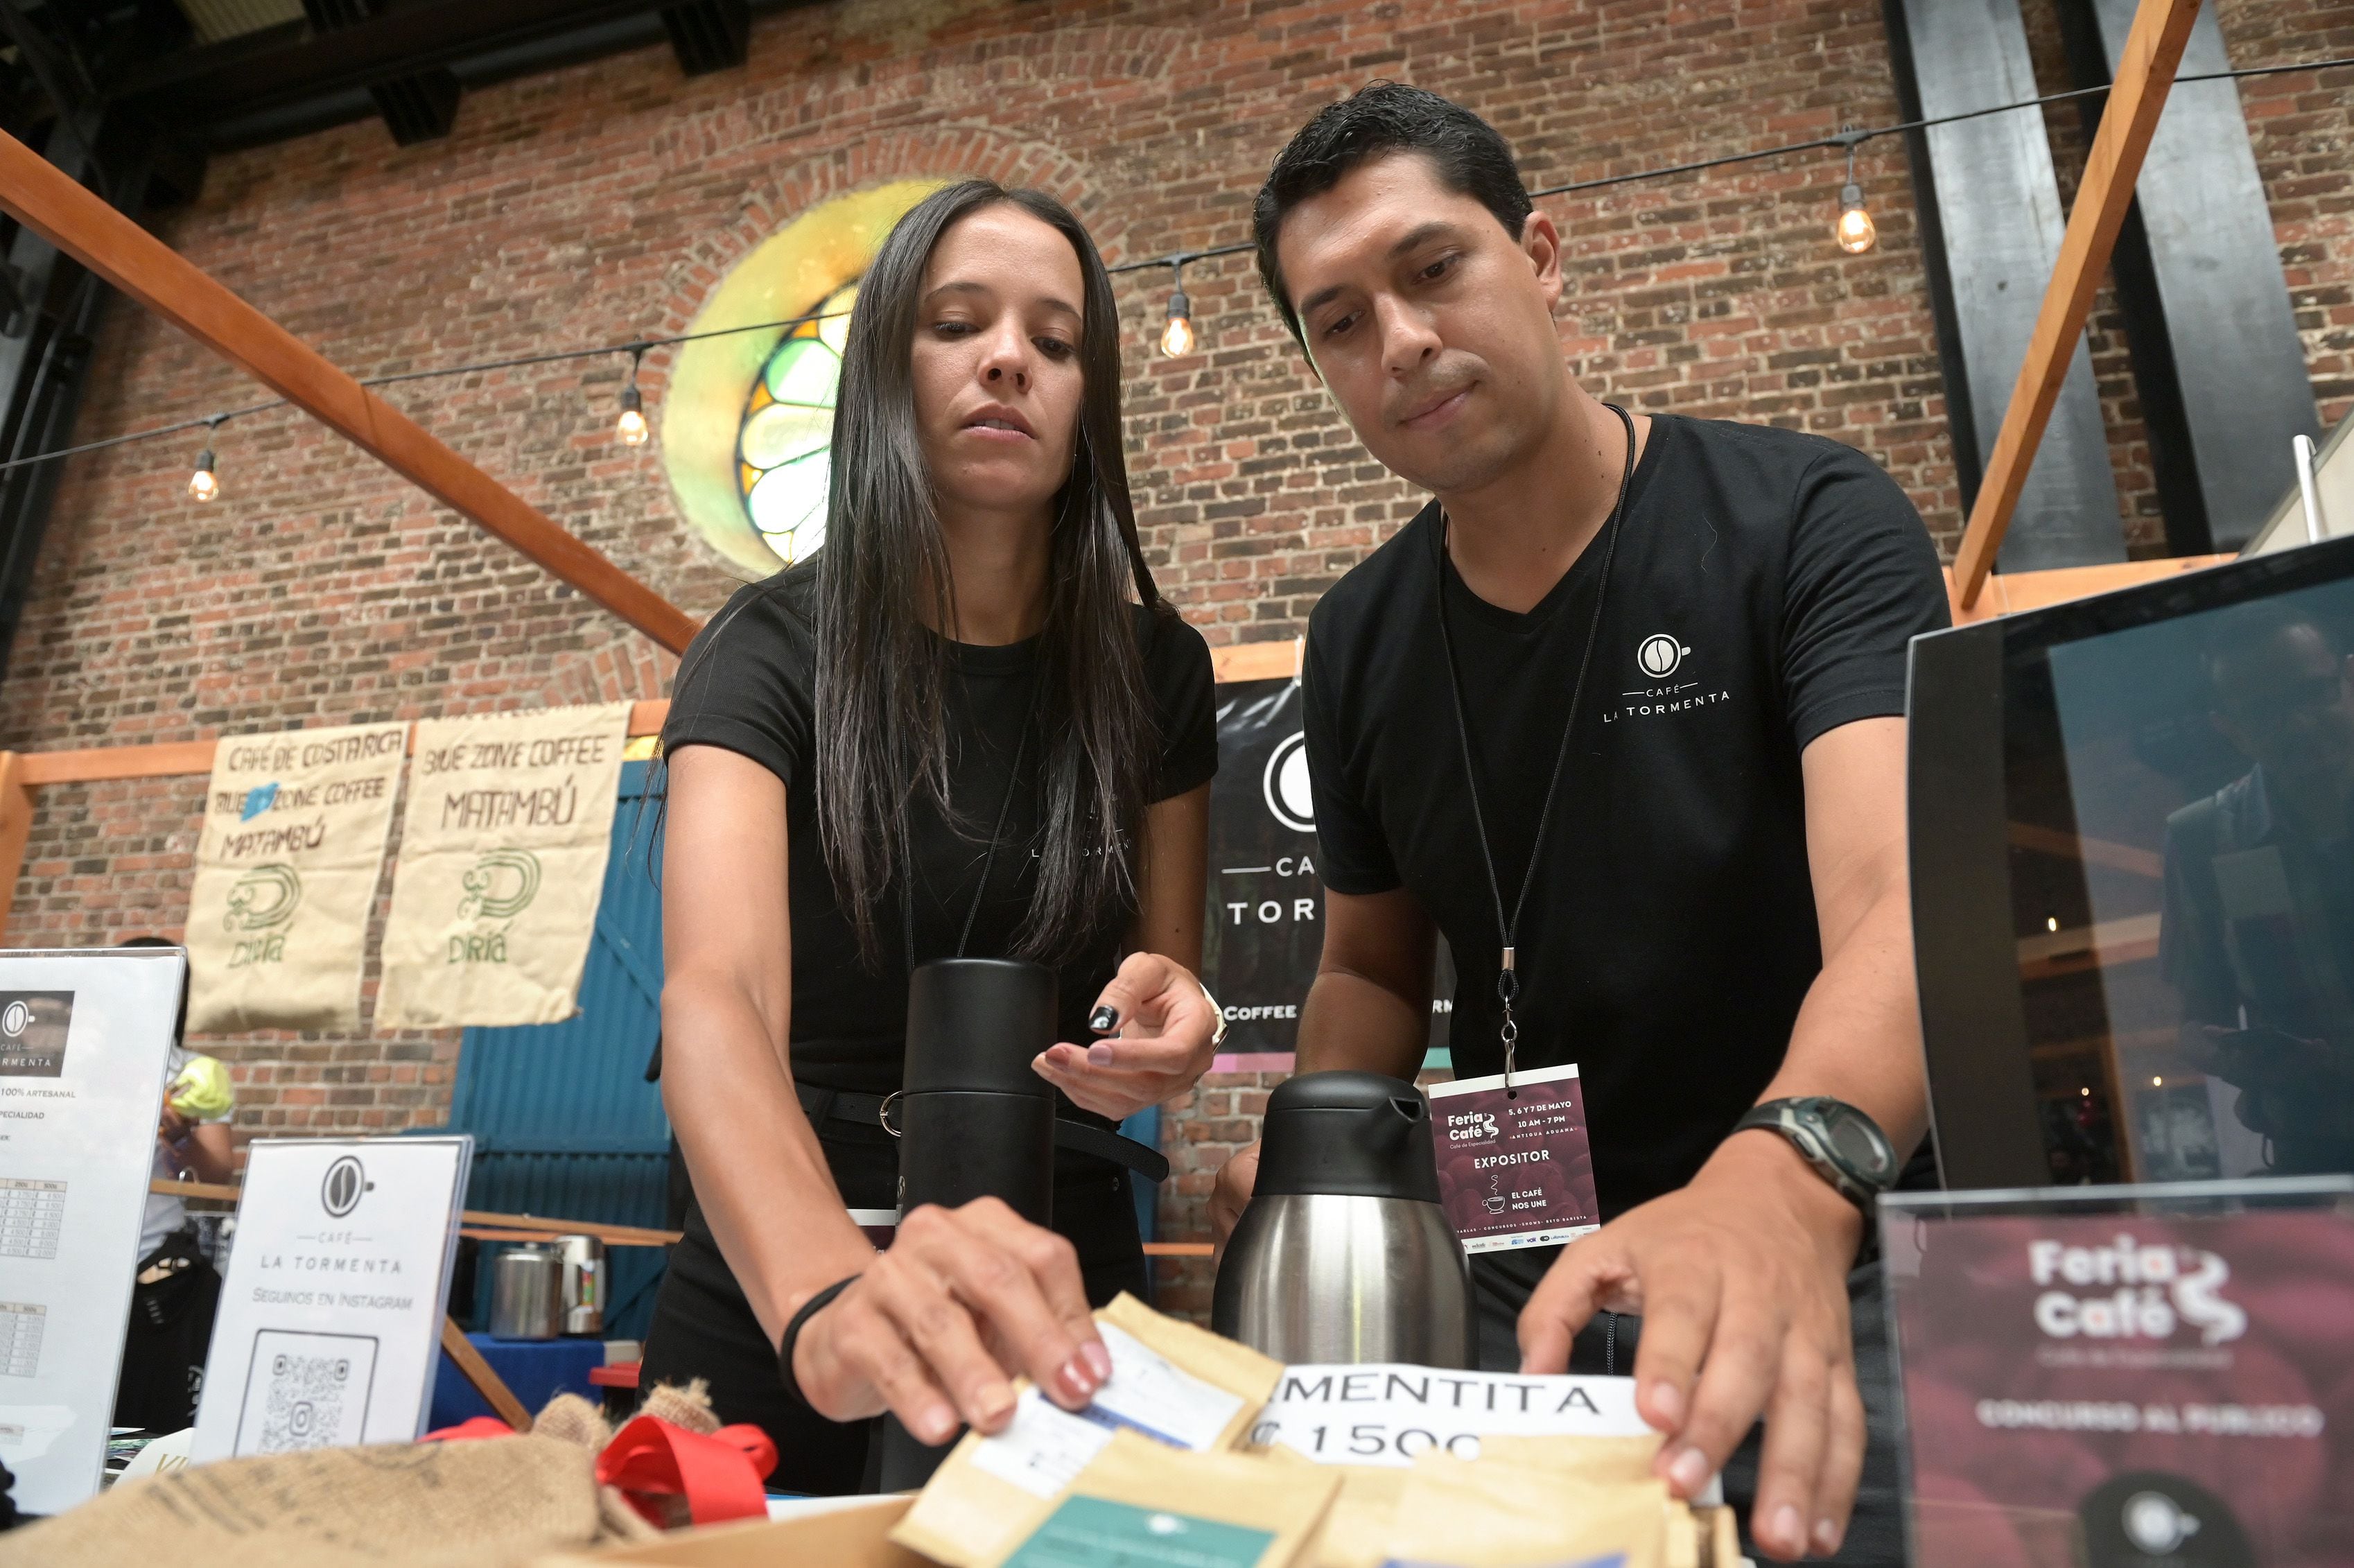  Patricia Mora y Pablo Sánchez, propietarios de Café La Tormenta, iniciaron hace año y medio el procesamiento de variedades de café de especialidades, actualmente comercializan 14 tipos del producto. Ambos participaron en la Feria del Café que se desarrolló a inicios de mayo en el edificio de la Antigua Aduana.